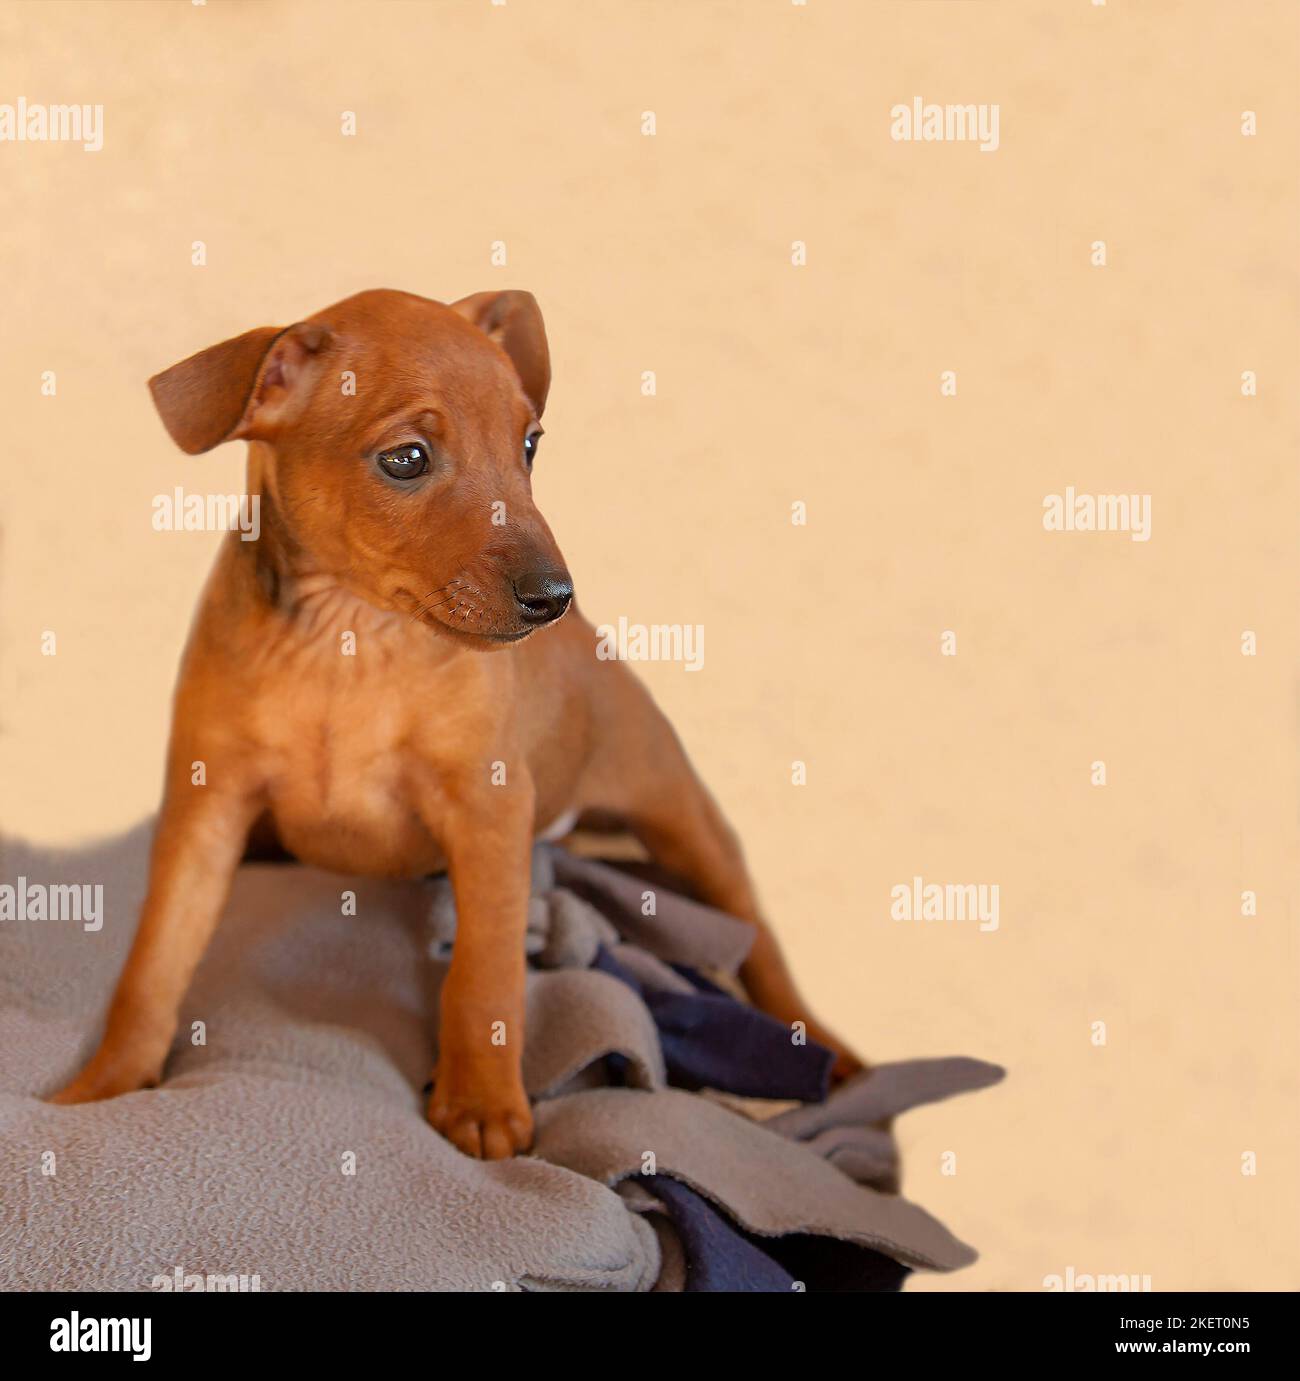 Un cucciolo corto siede su uno sfondo beige. Piccolo cane marrone, guarda via. La museruola di un animale domestico. Occhi neri e naso di un animale. Ritratto di un cucino. Foto Stock